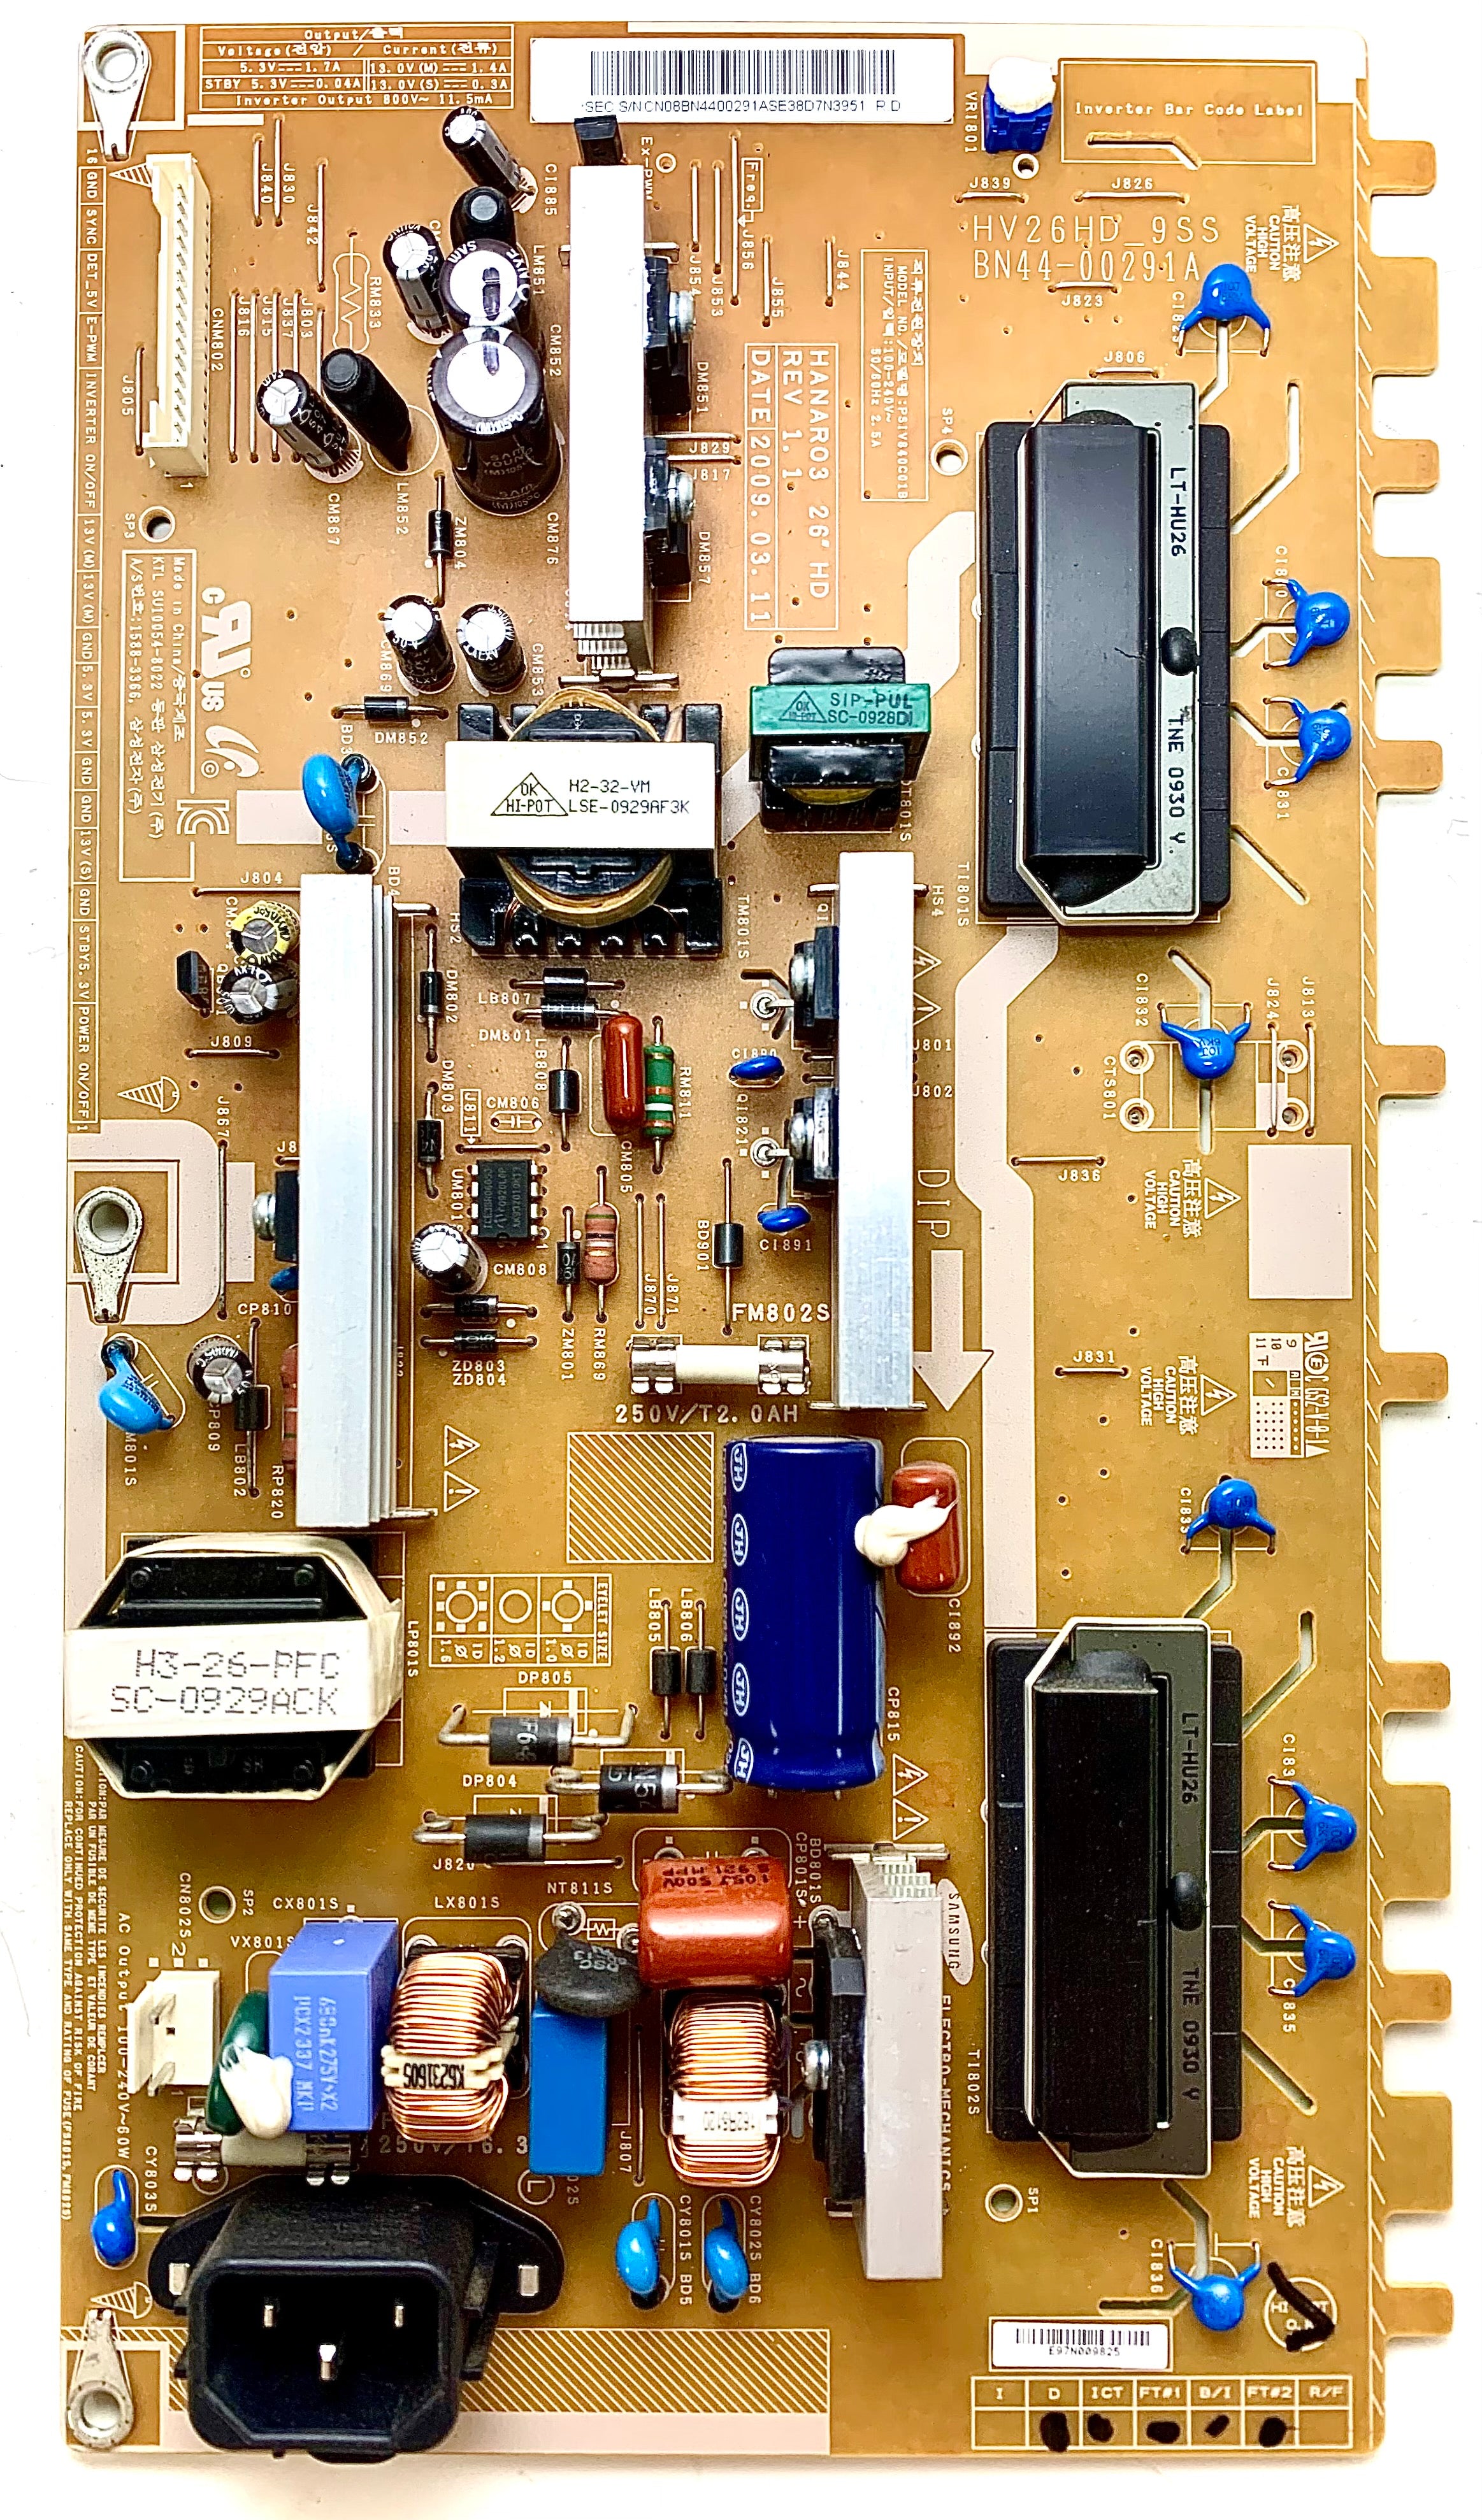 Samsung BN44-00291A (PSIV840C01B, HV26HD_9SS) Power Supply / Backlight Inverter